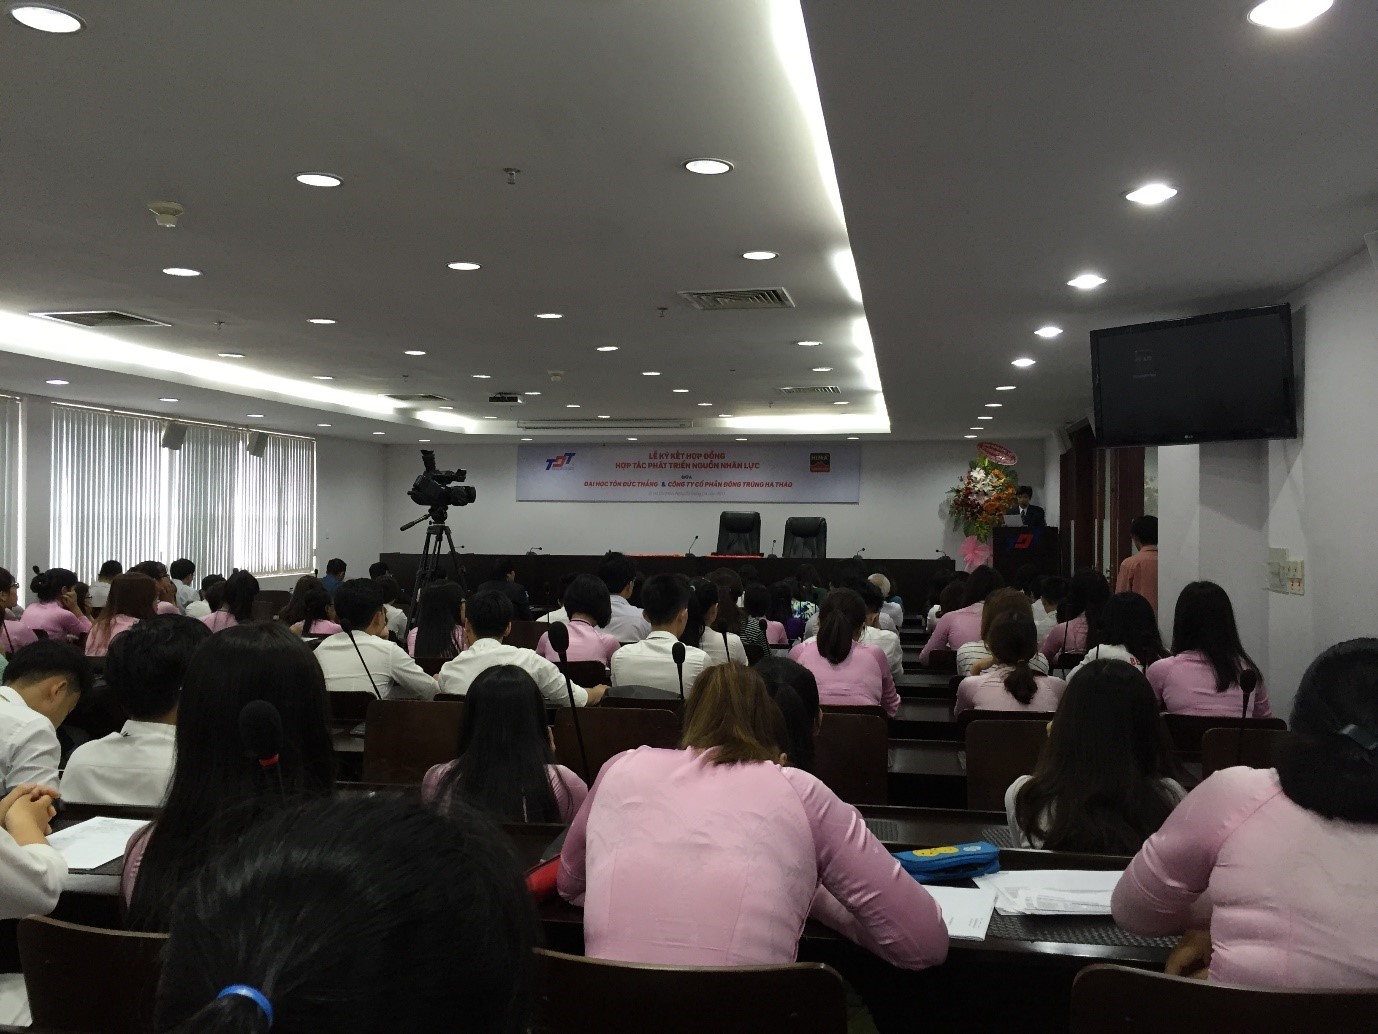 Quang cảnh buổi Lễ Ký kết với đông đảo sinh viên K19 ngành Quản trị Marketing tham dự